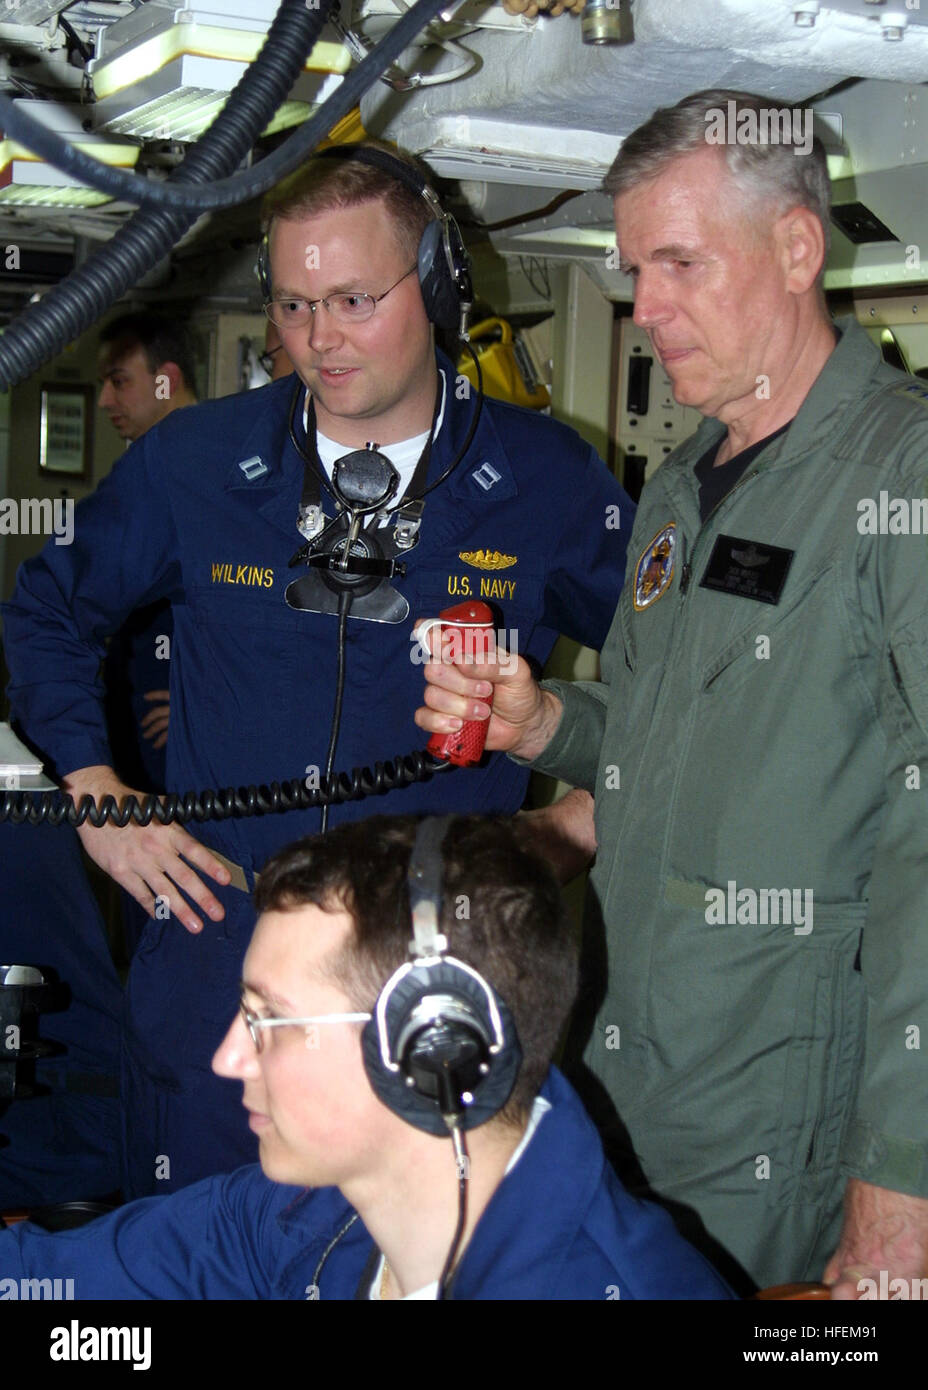 030628-N-2903K-002 in mare a bordo della USS Rhode Island (SSBN 740) Jun. 28, 2003 -- Gen. Richard B. Myers Presidente del Comune di capi di Stato Maggiore, prende parte al missile centro di controllo durante una battaglia stazioni esercizio di formazione a bordo del missile balistico sommergibile USS Rhode Island (SSBN 740). Stati Uniti Foto di Marina dal giornalista di terza classe B.L. Keller. (Rilasciato) Navy US 030628-N-2903K-002 gen. Richard B. Myers Presidente del Comune di capi di Stato Maggiore, prende parte al missile centro di controllo durante una battaglia stazioni esercizio di formazione a bordo del missile balistico sommergibile USS Rhode Island Foto Stock